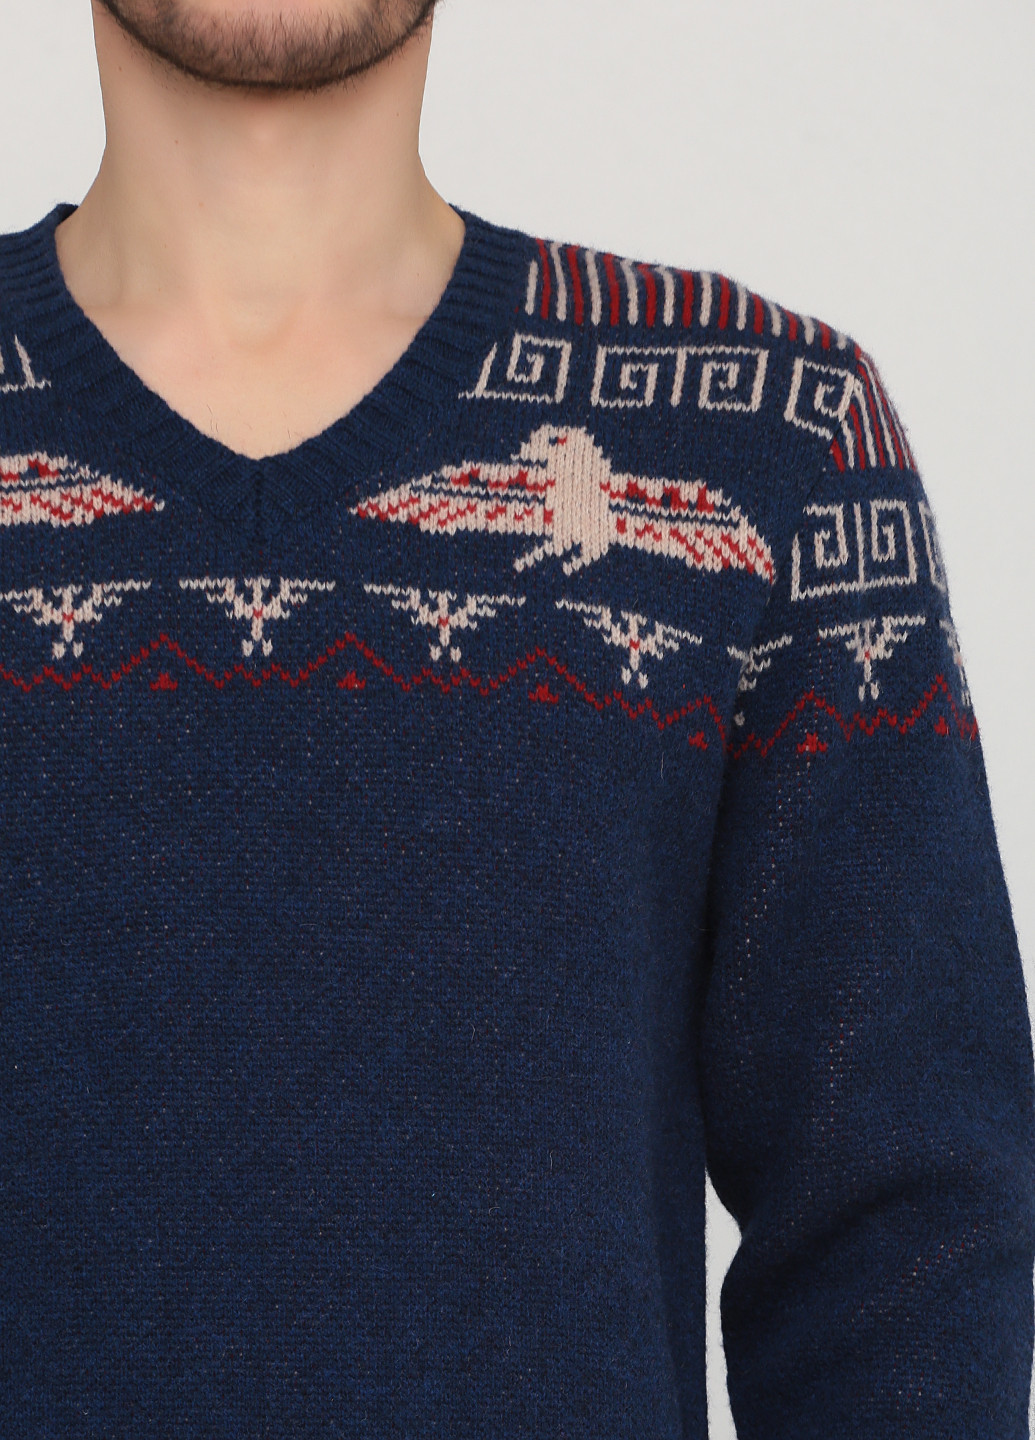 Синий демисезонный пуловер пуловер Ralph Lauren